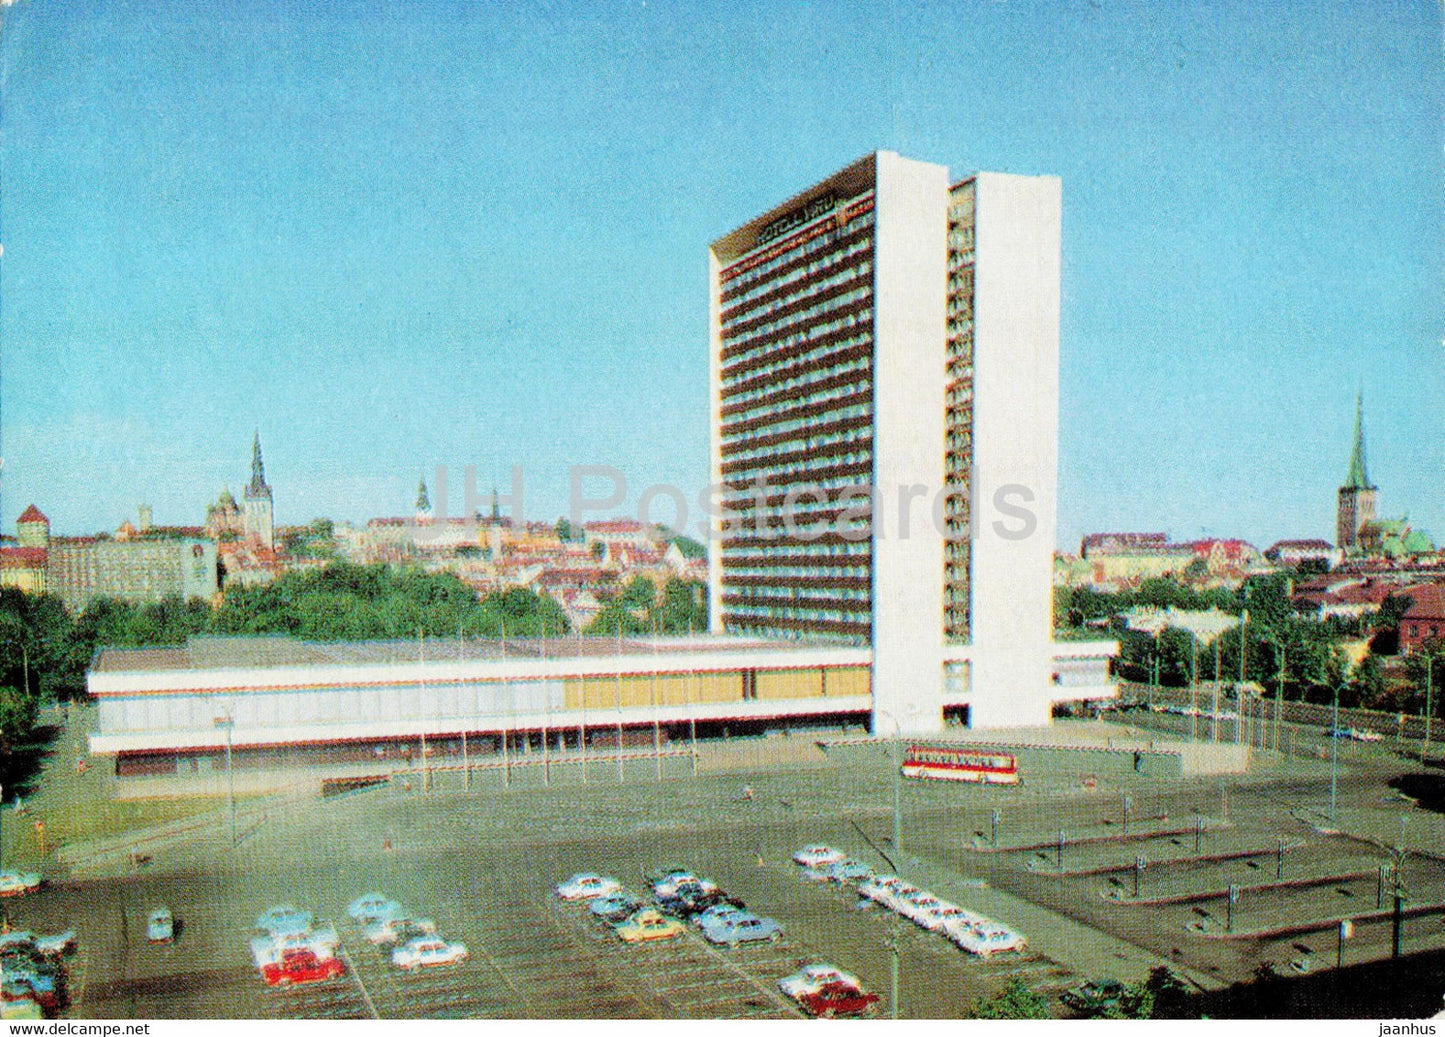 Tallinn - hotel Viru - postal stationery - 1977 - Estonia USSR - unused - JH Postcards